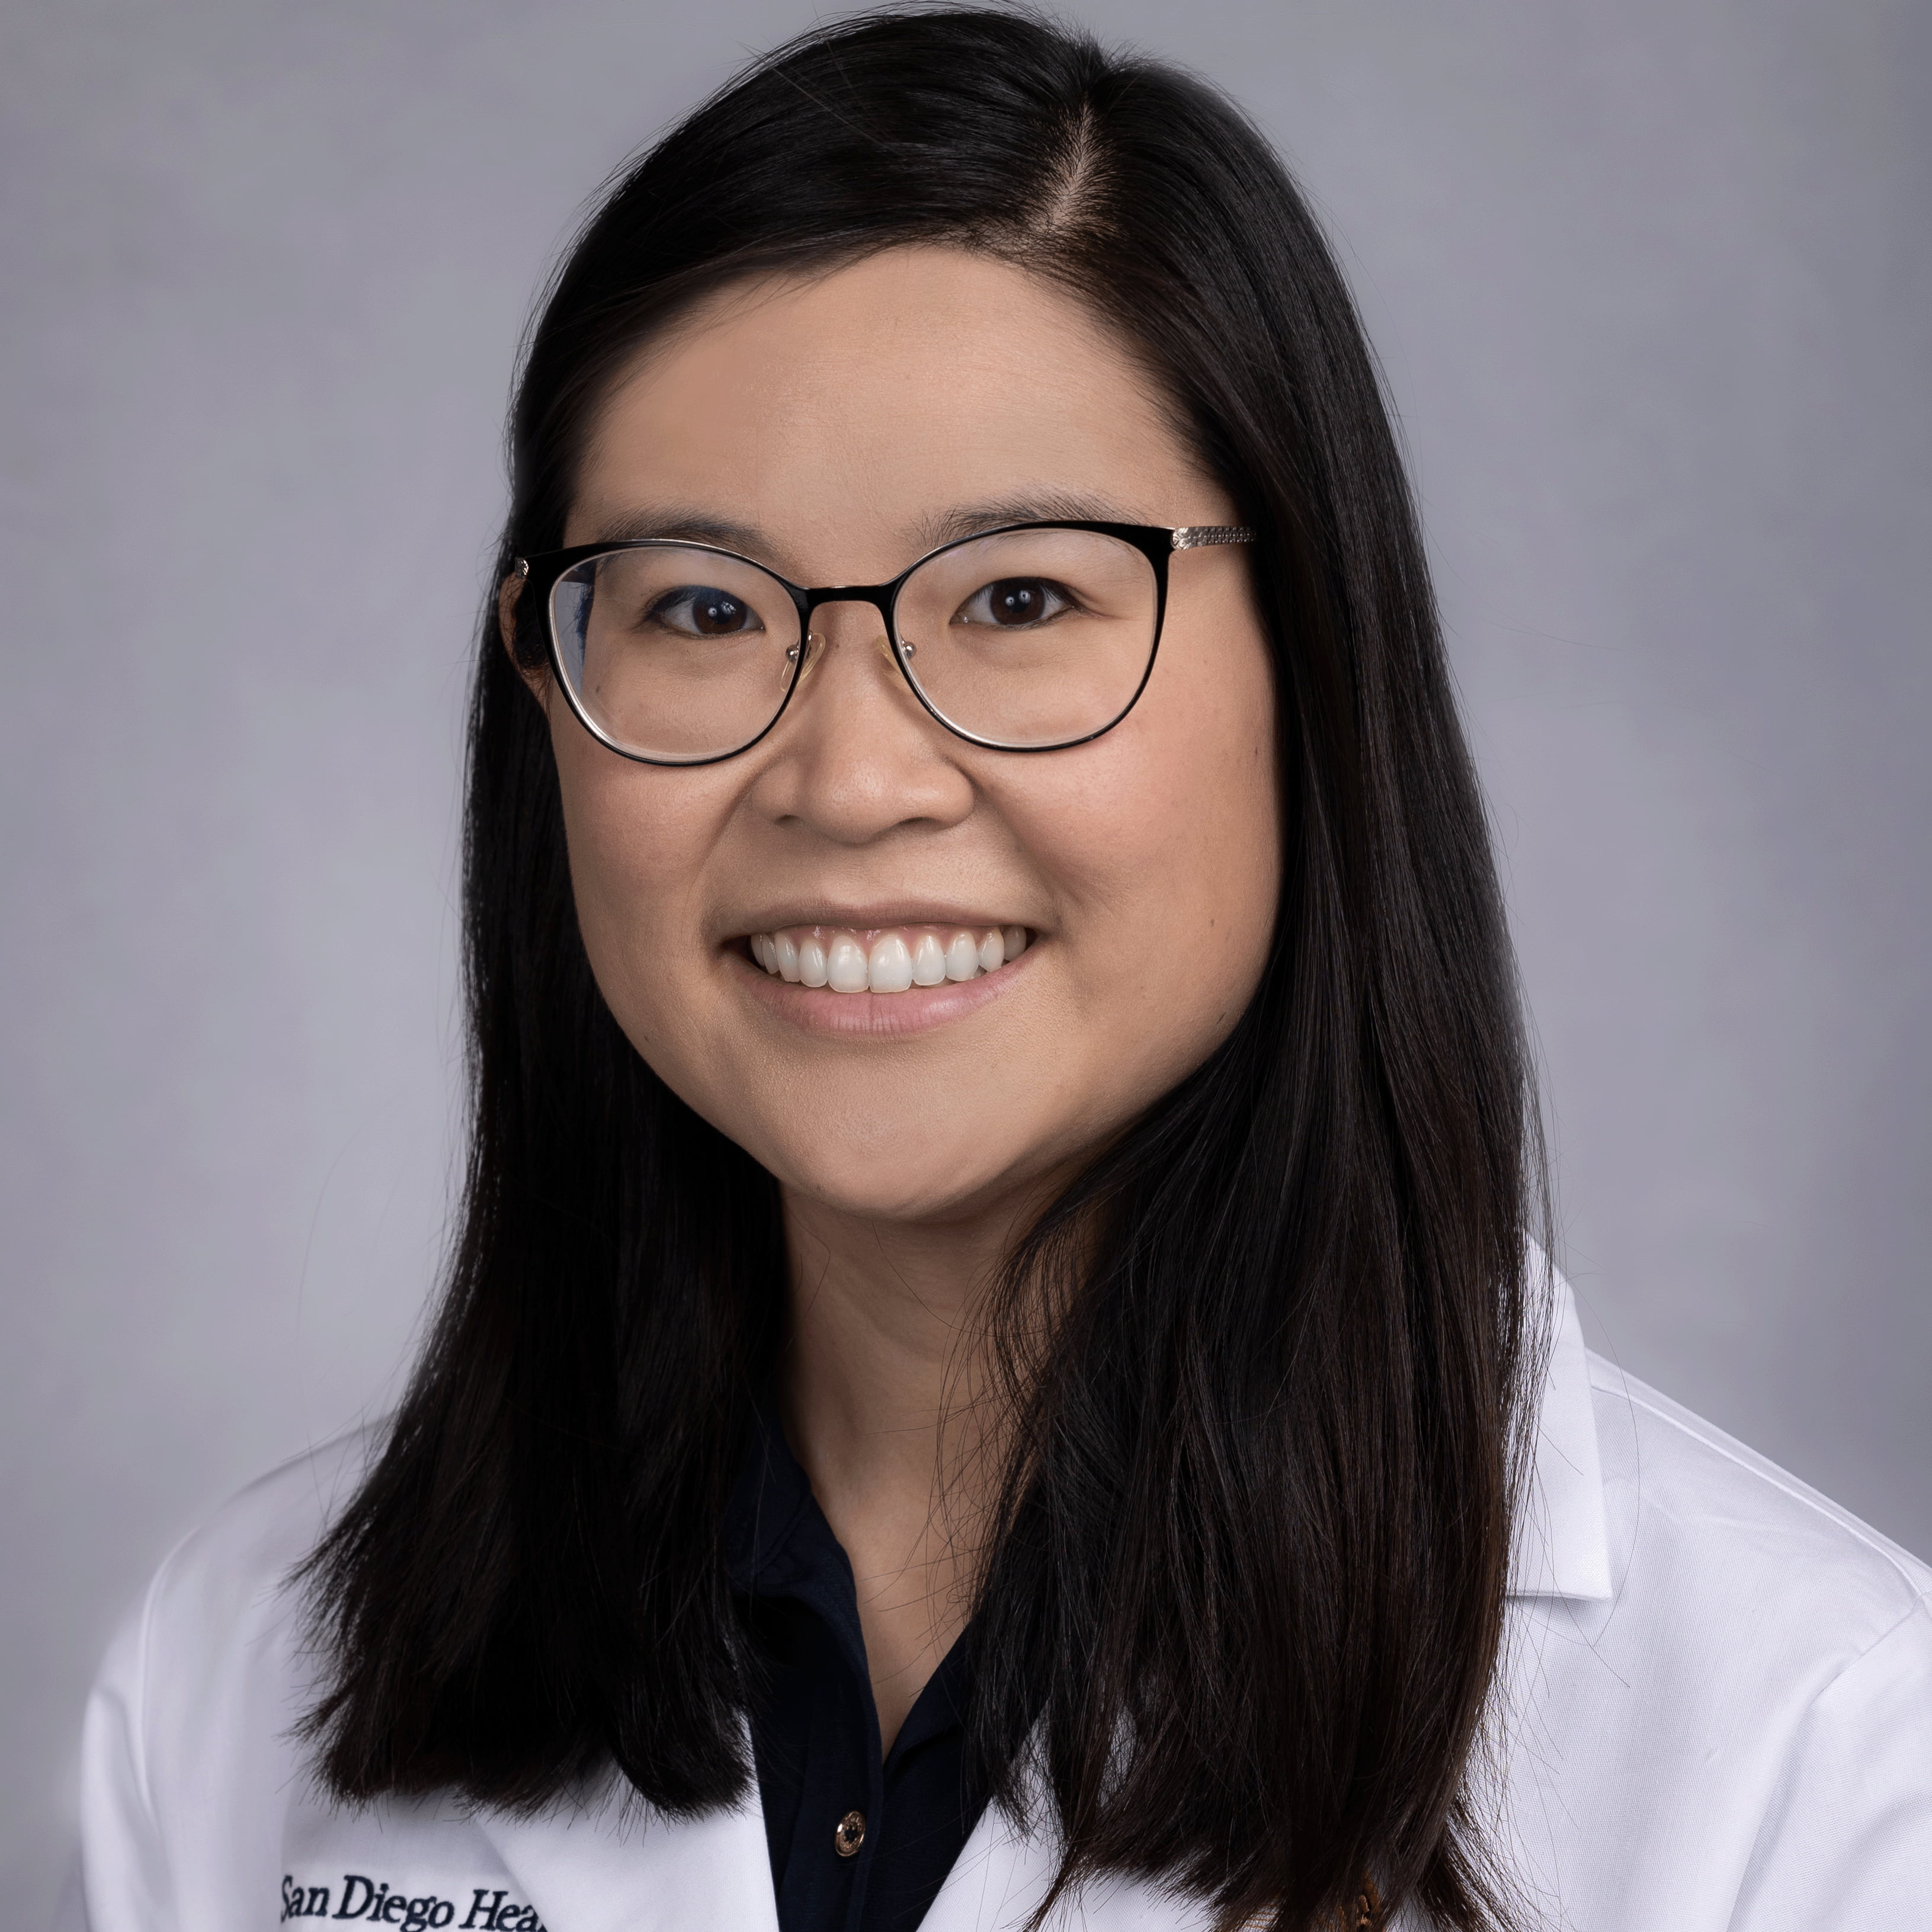 Emily Nguyen, MD PhD